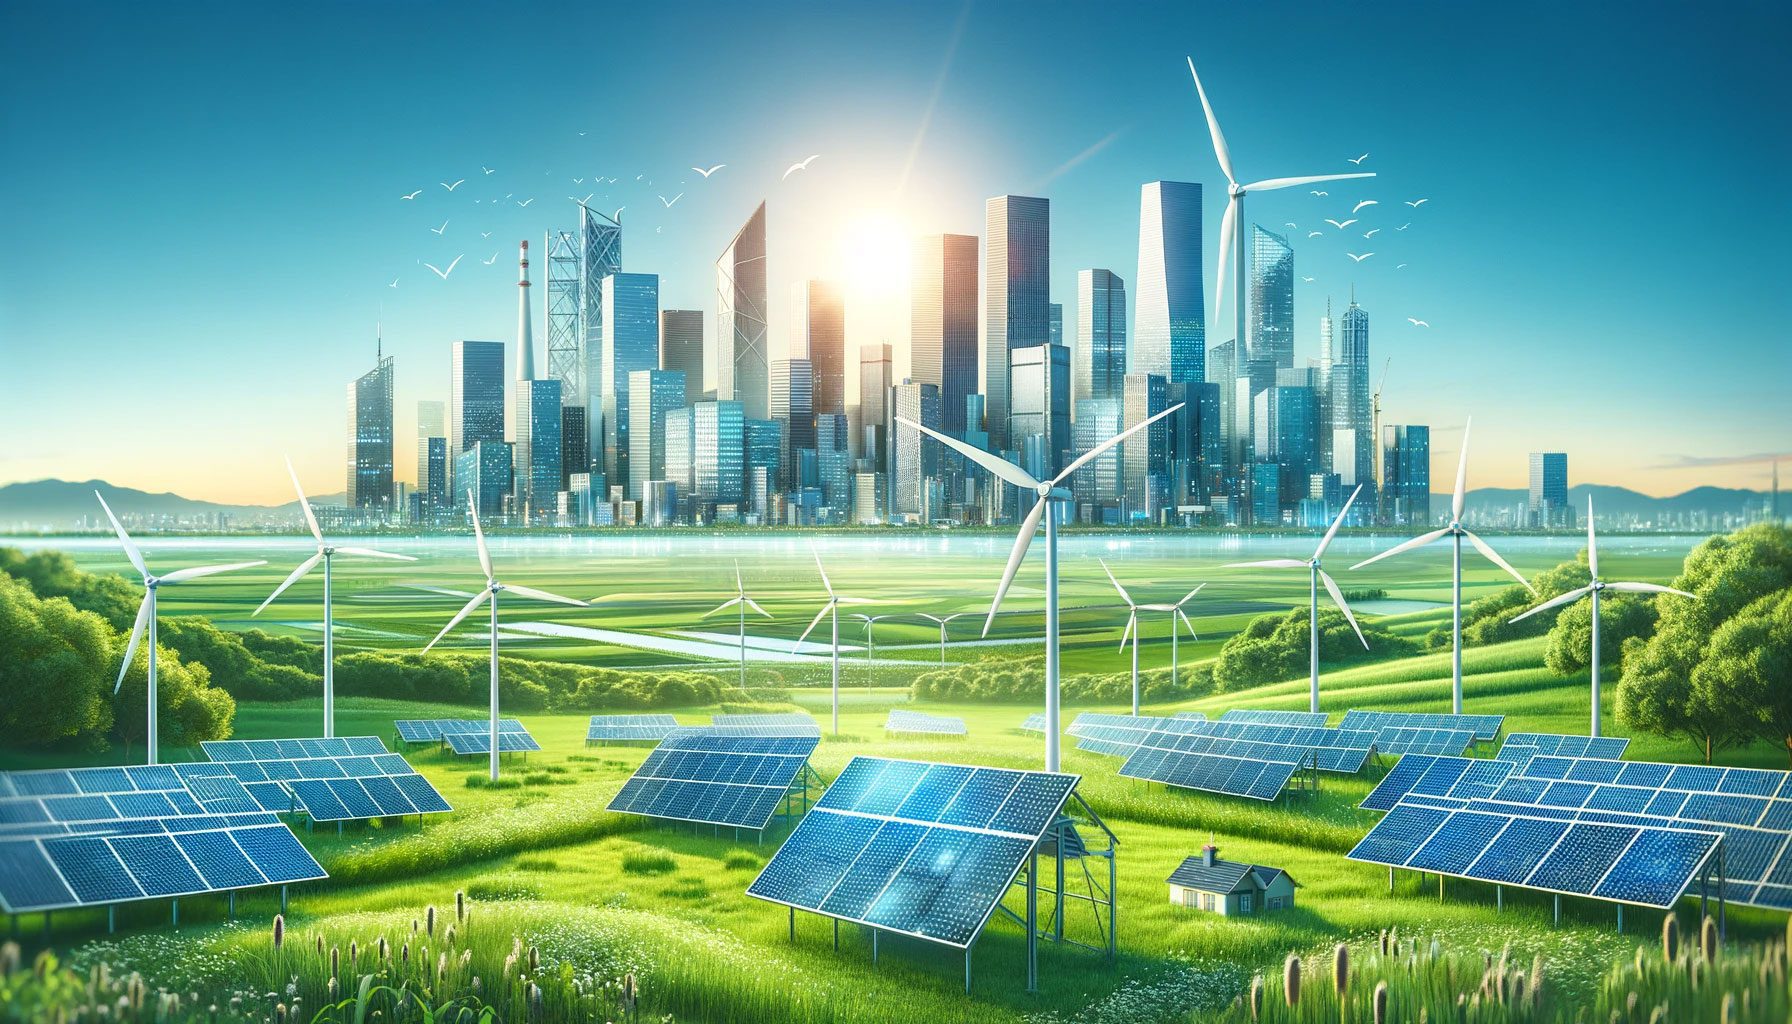 Enerjisa Enerji 2023 Yatırımları Sürdürülebilir Enerji Gelişim Planları Enerji Sektöründe Yenilikçi Projeler ENJSA